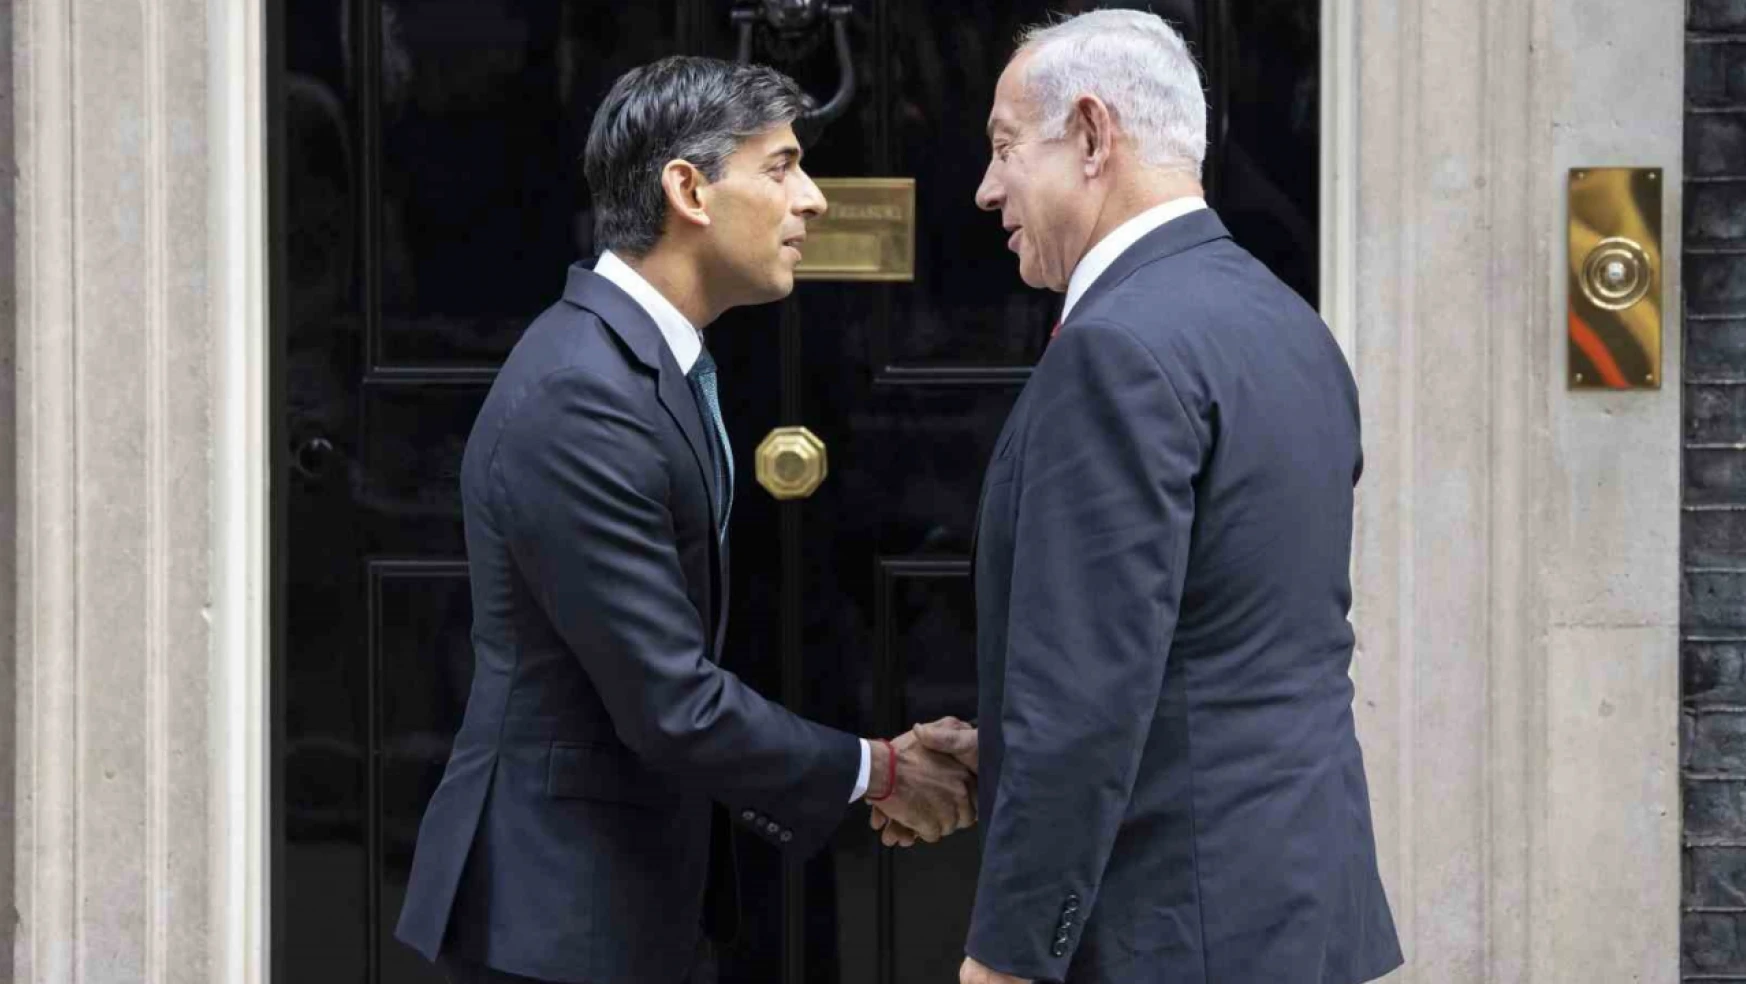 İngiltere Başbakanı Sunak'tan Netanyahu'ya itidal çağrısı